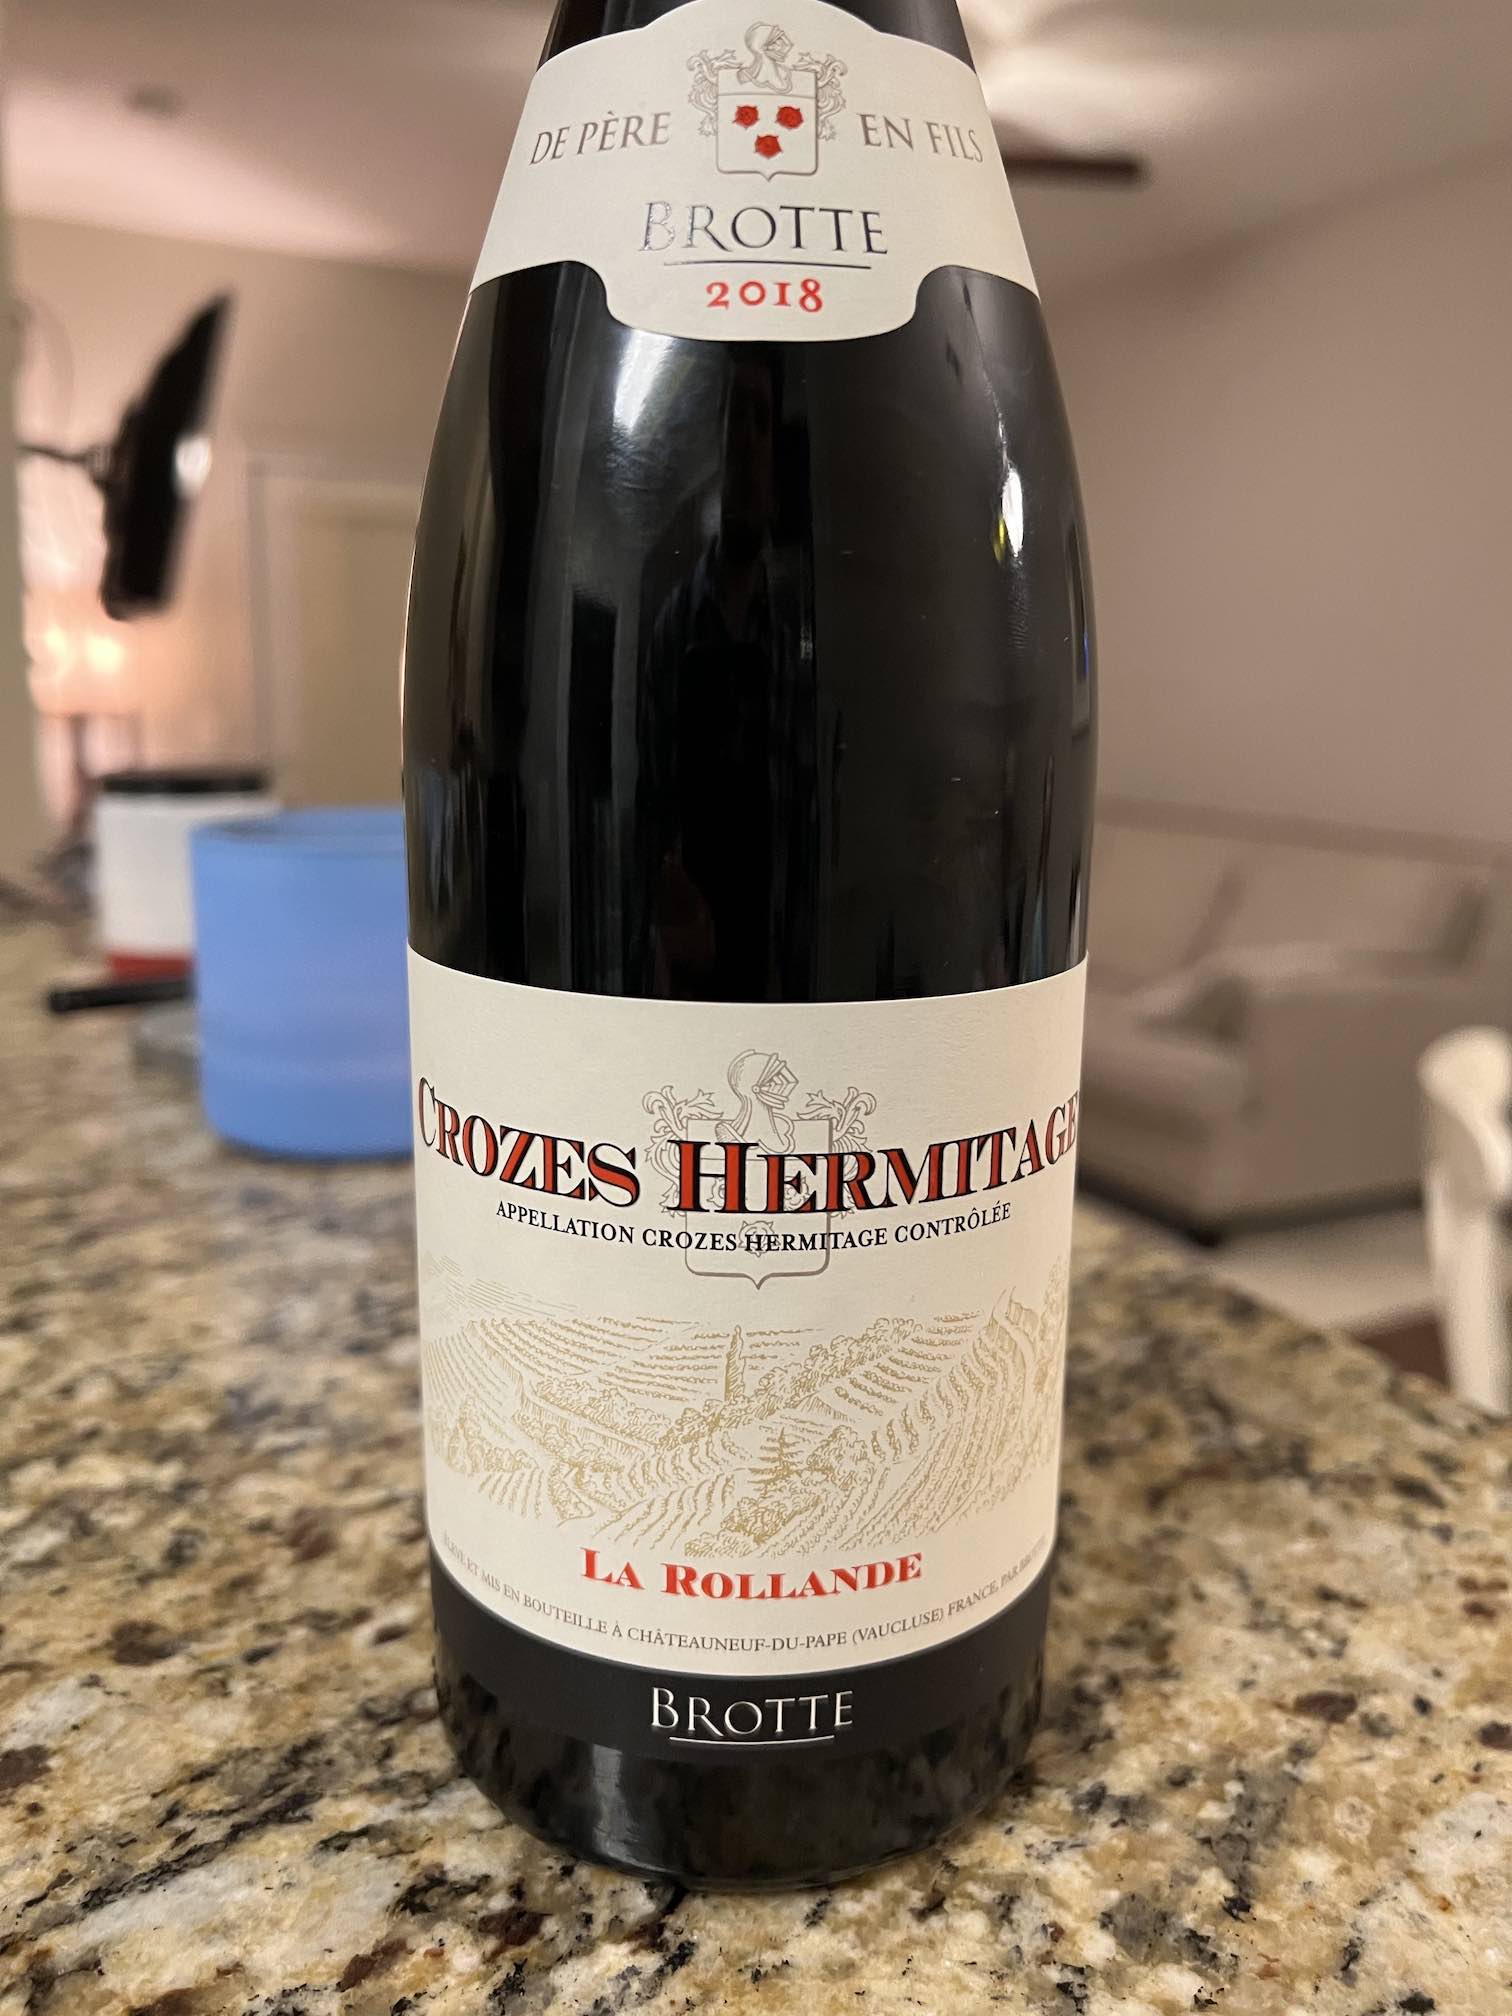 Wine Review: Brotte Crozes-Hermitage La Rollande 2018